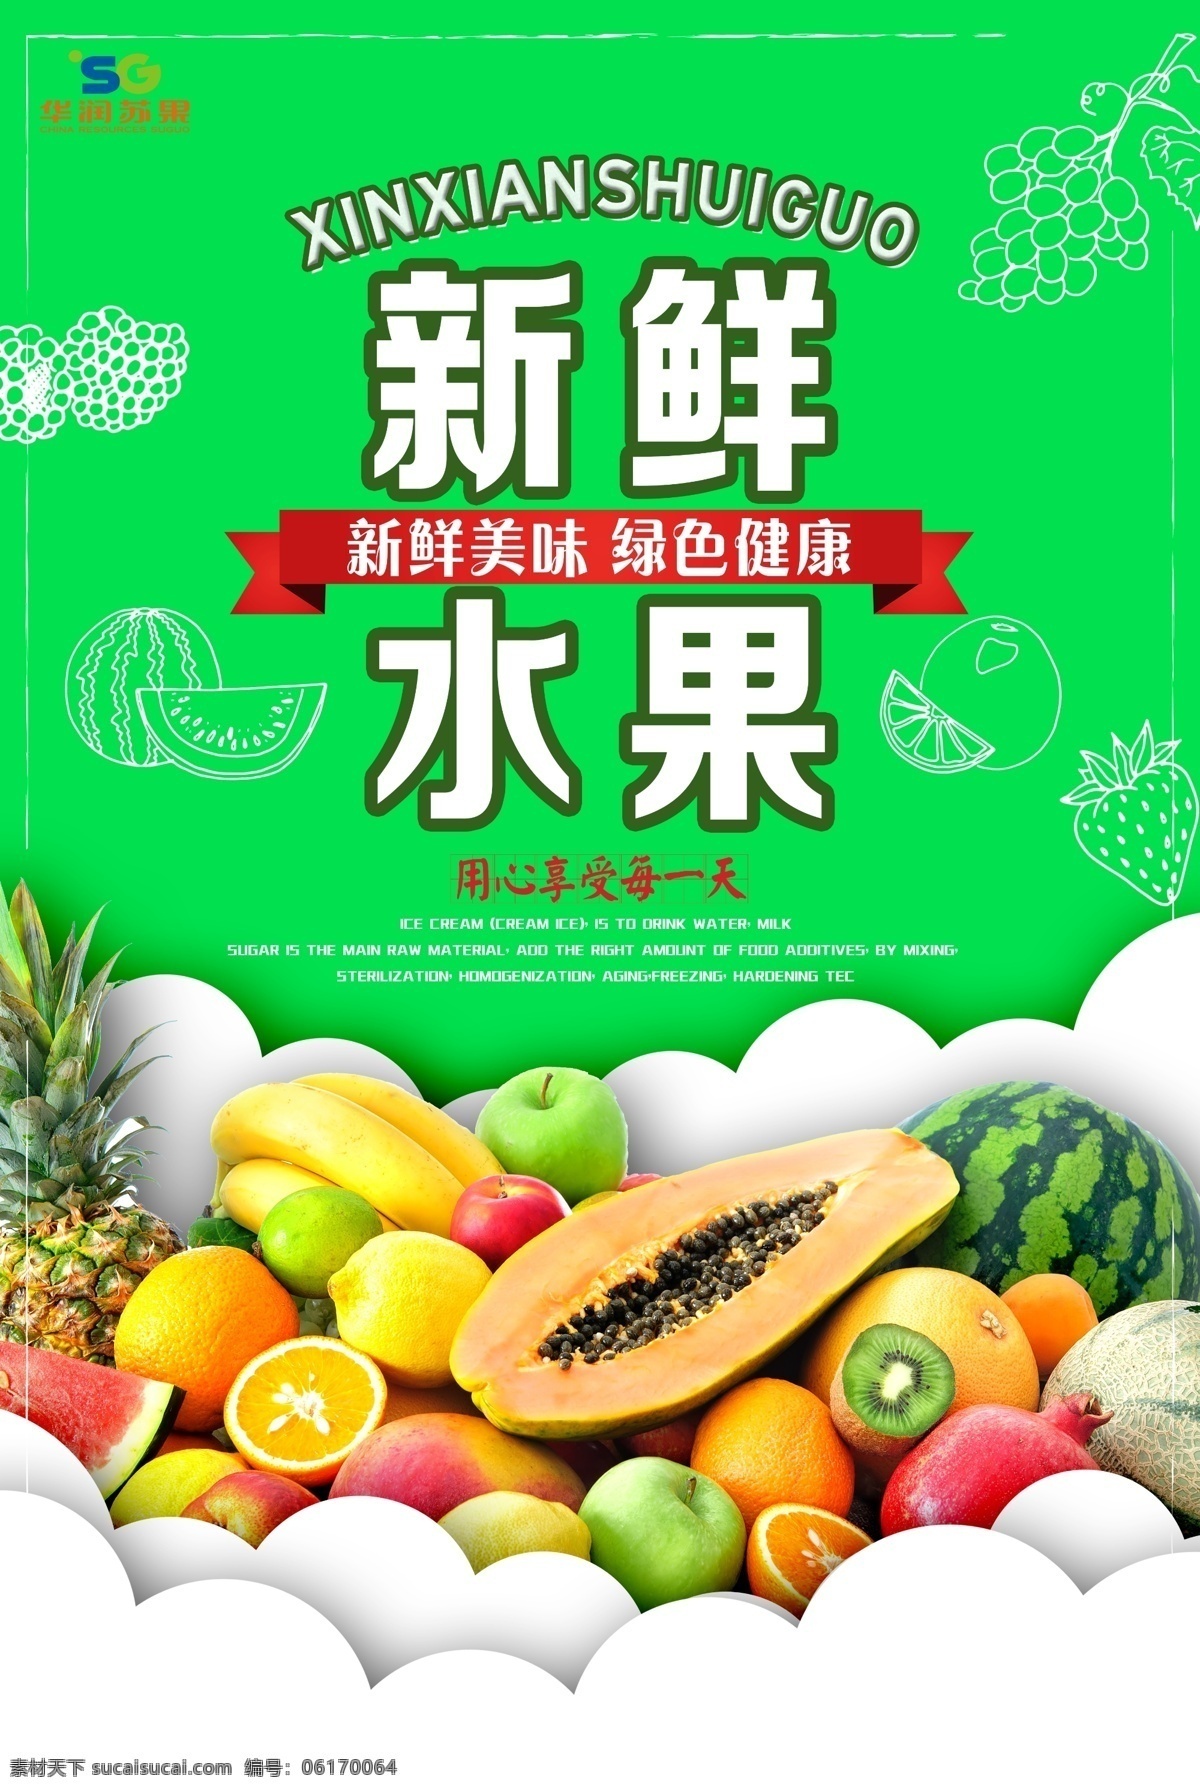 超市 水果 灯箱广告 新鲜水果 超薄灯箱 超市广告 华润苏果 分层